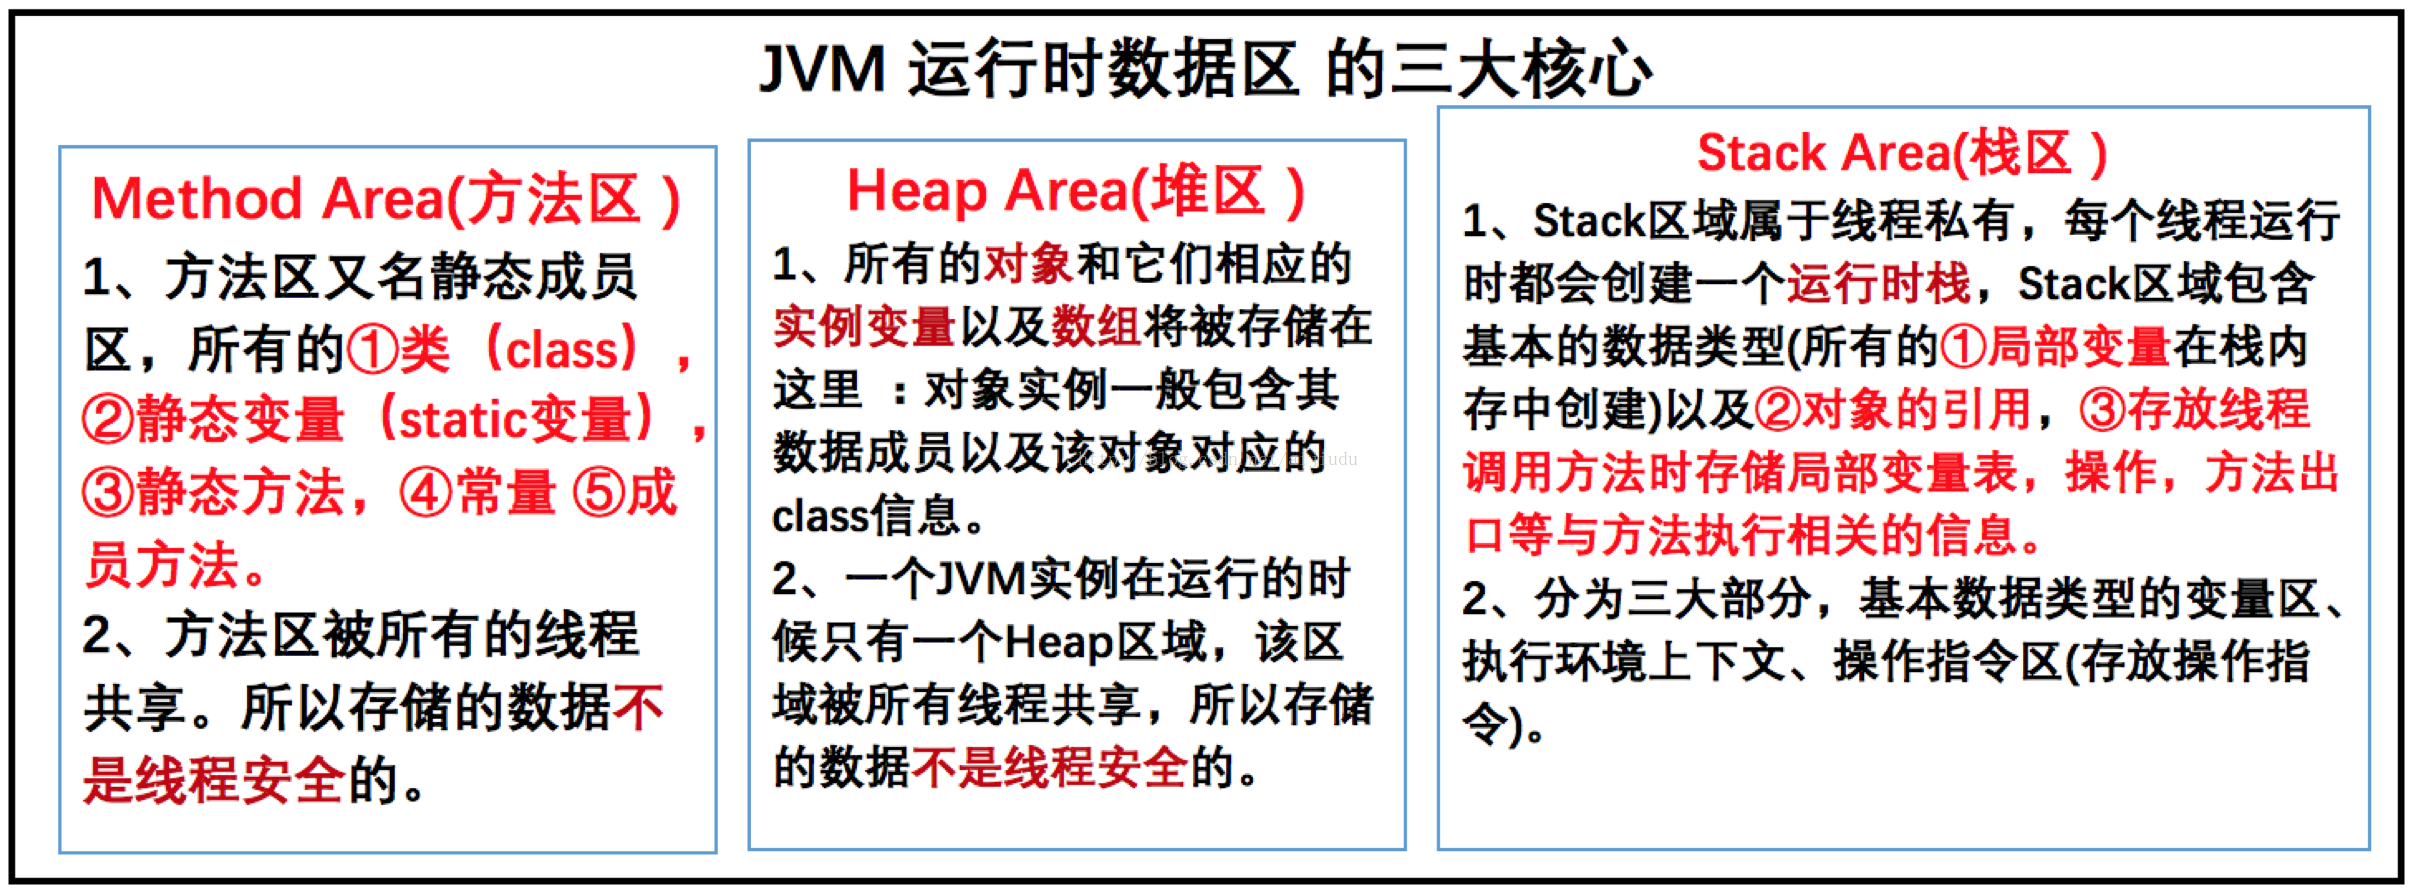 JVM架构和GC垃圾回收机制(JVM面试不用愁)